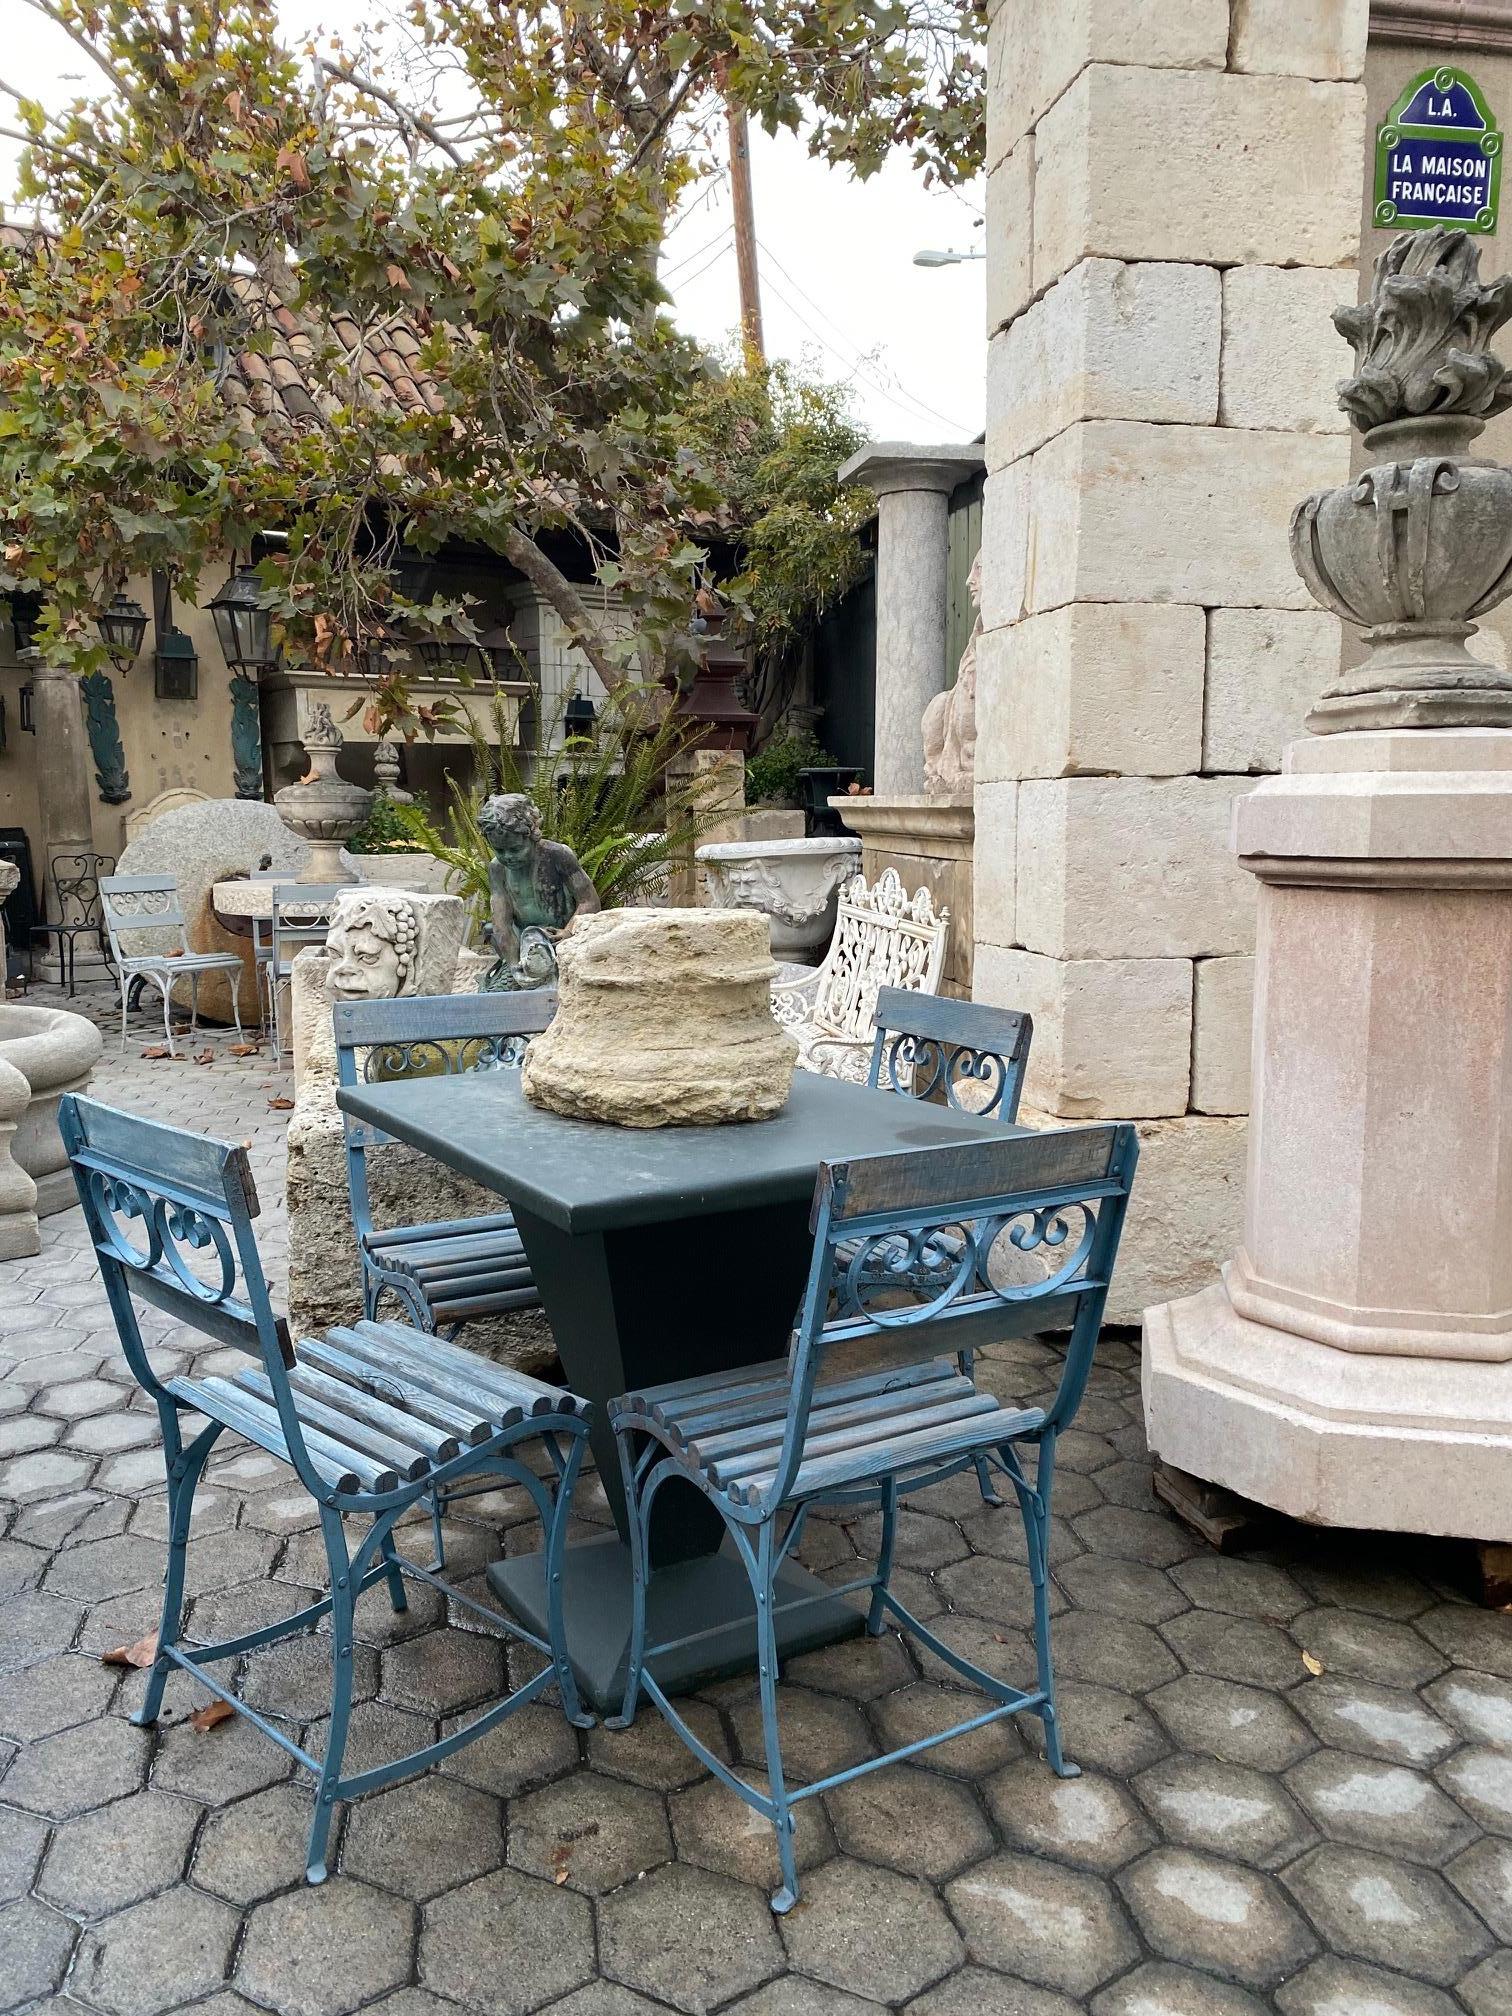 Magnifique patio de jardin latéral du 19ème siècle en métal de fer et chaises en bois sculpté avec mobilier en peinture ancienne, provenant de l'hippodrome situé à Paris, France. Nous avons un total de 8 en couleur bleue, nous en avons quelques uns